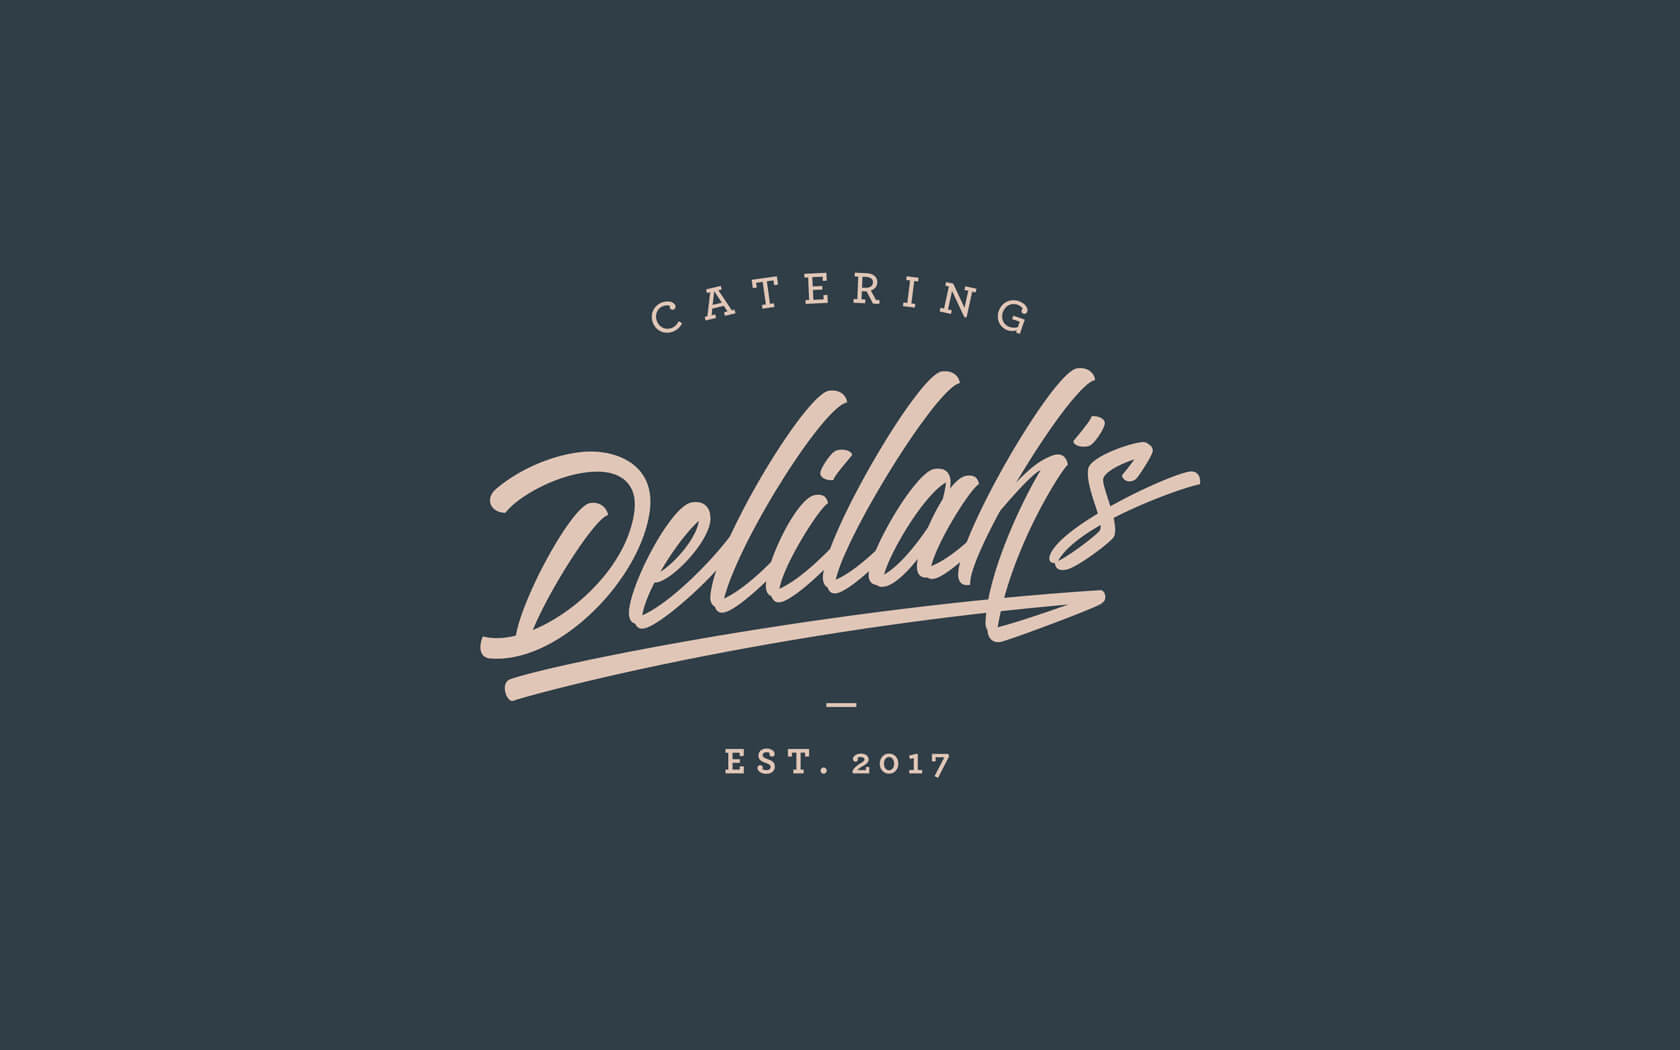 Delilah’s Catering brand logo